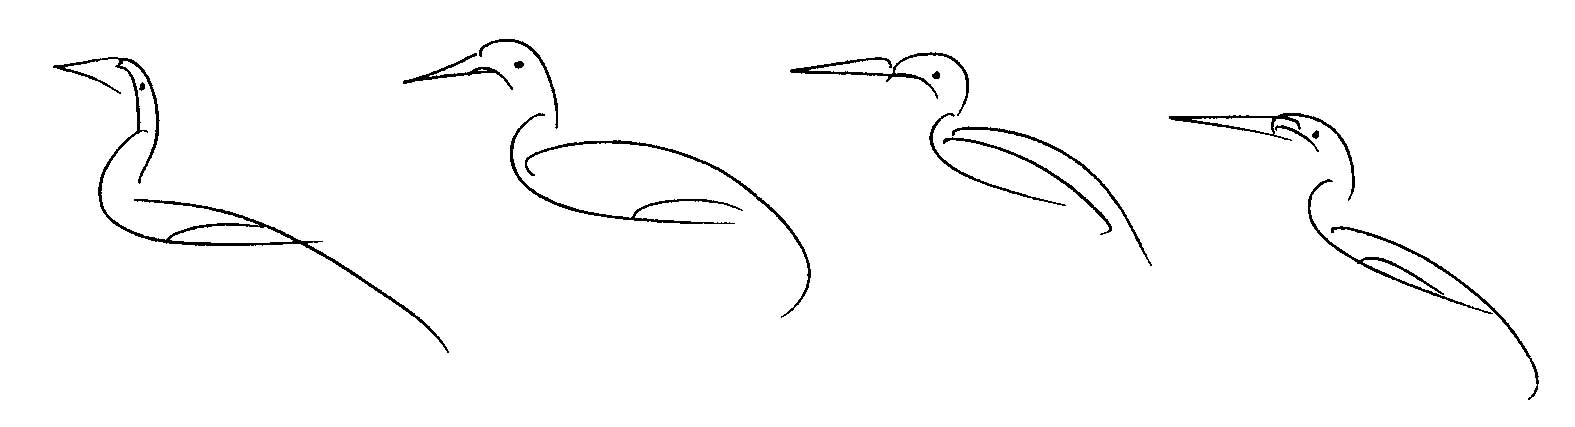 _Bird-Drawing-by-Sri-Chinmoy-undated-328